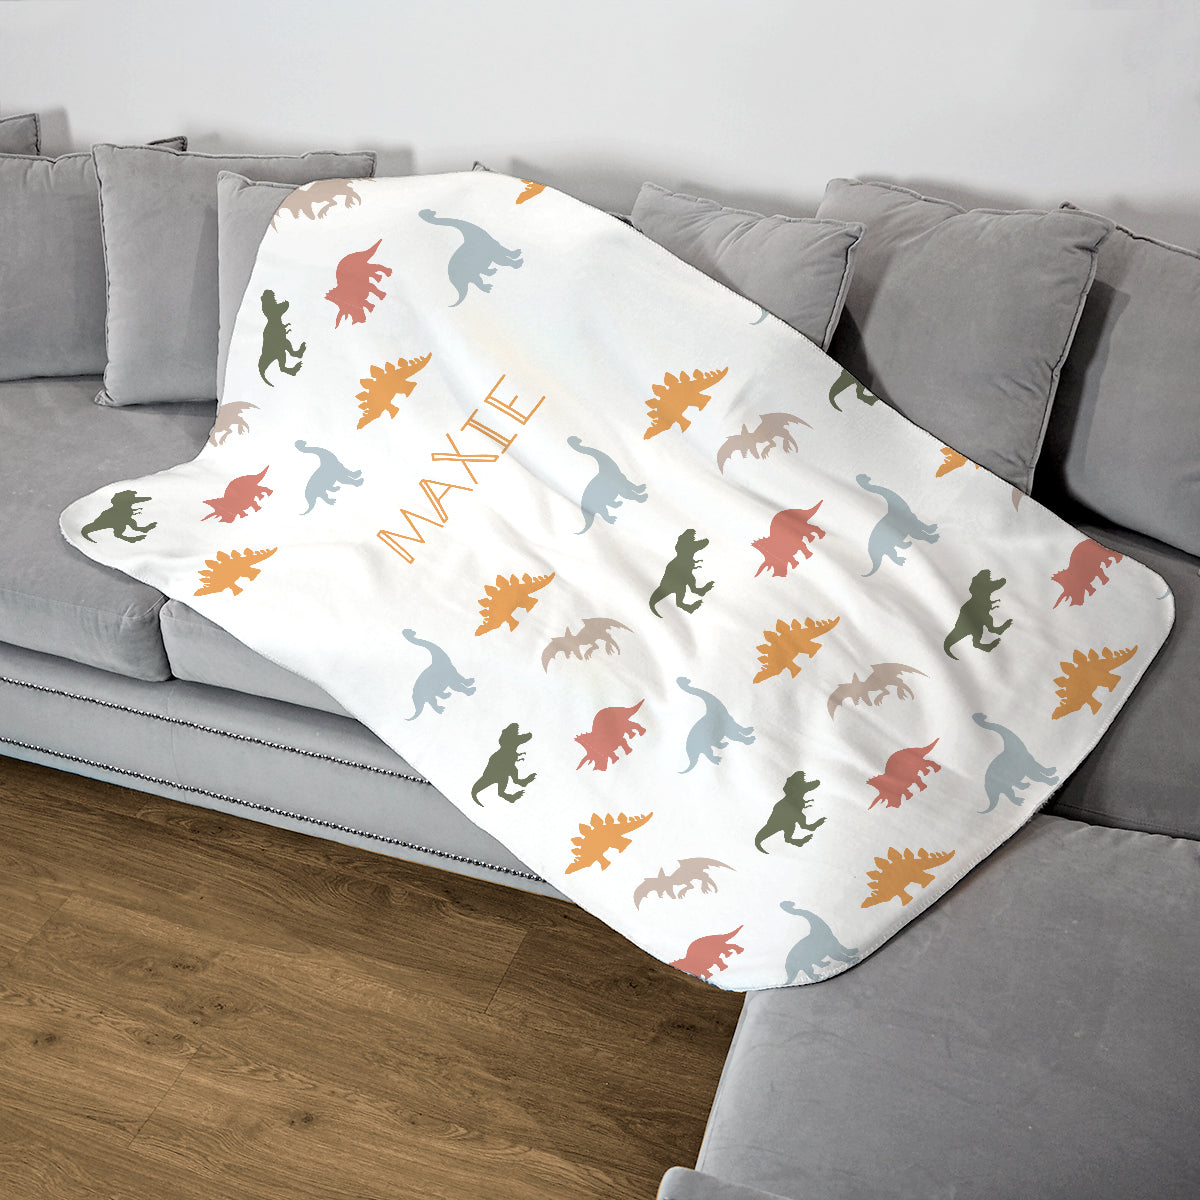 Personalised Childrens Blanket - Pastel Dinosaur Print - Fleece Blanket